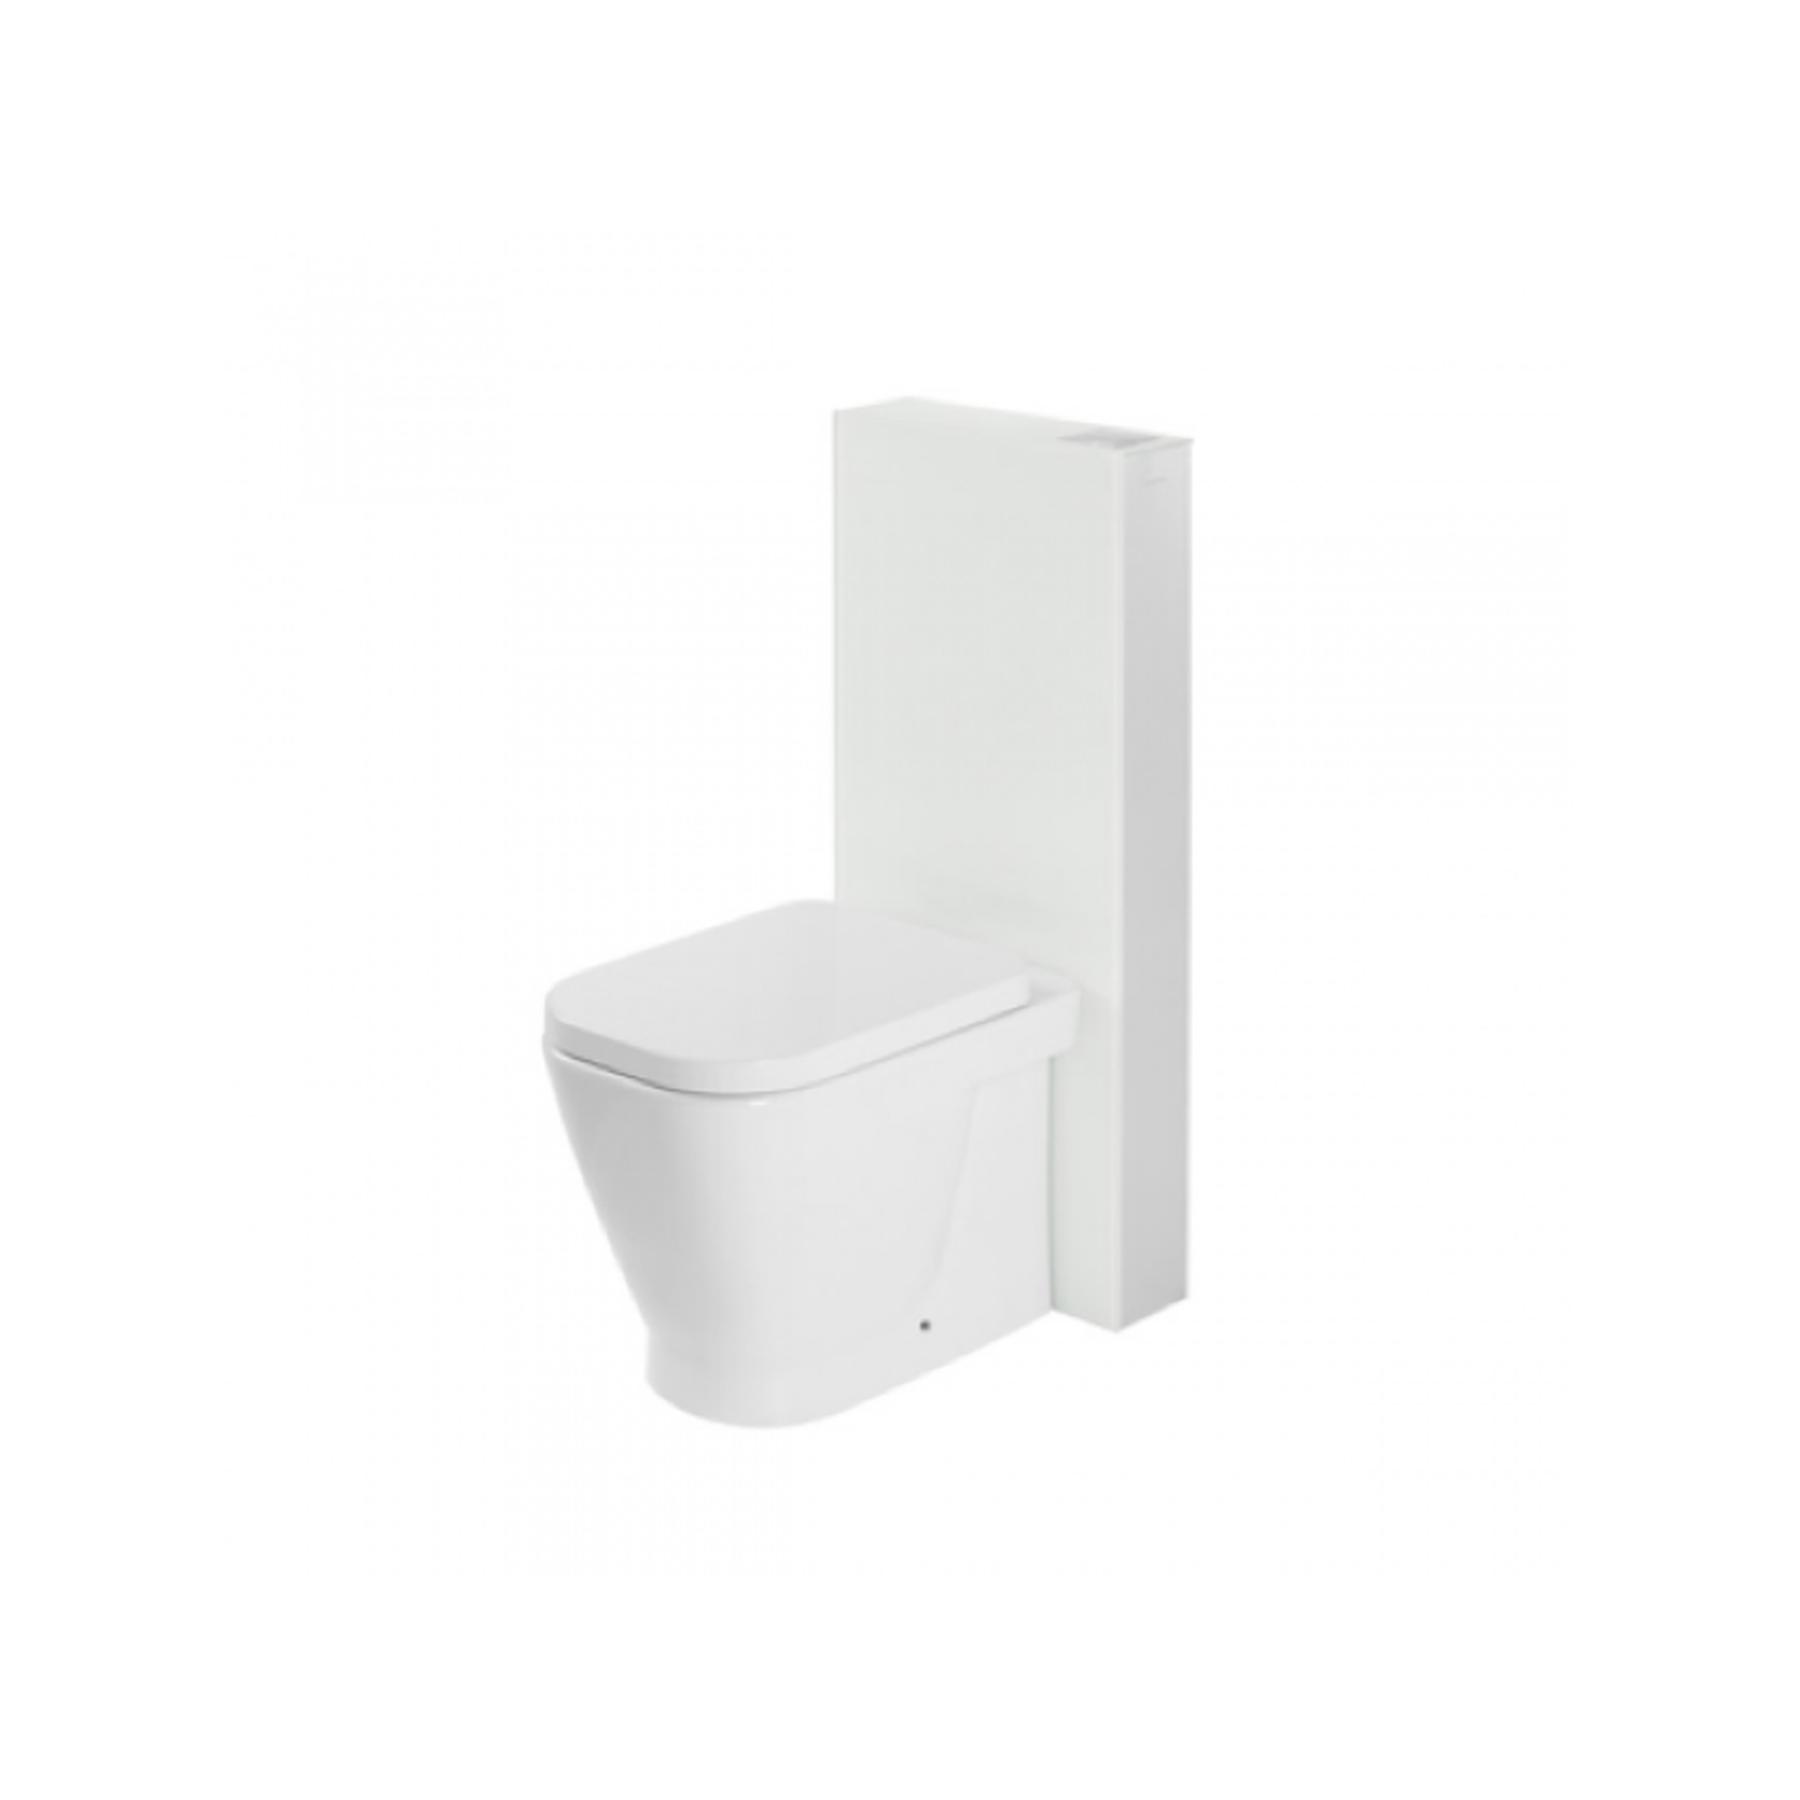 Panneau acrylique SANGLASS avec réservoir 3/6L pour Cuvette de WC céramique traditionnelle Gamme PRO SANINDUSA simple couleur blanc/chrome   